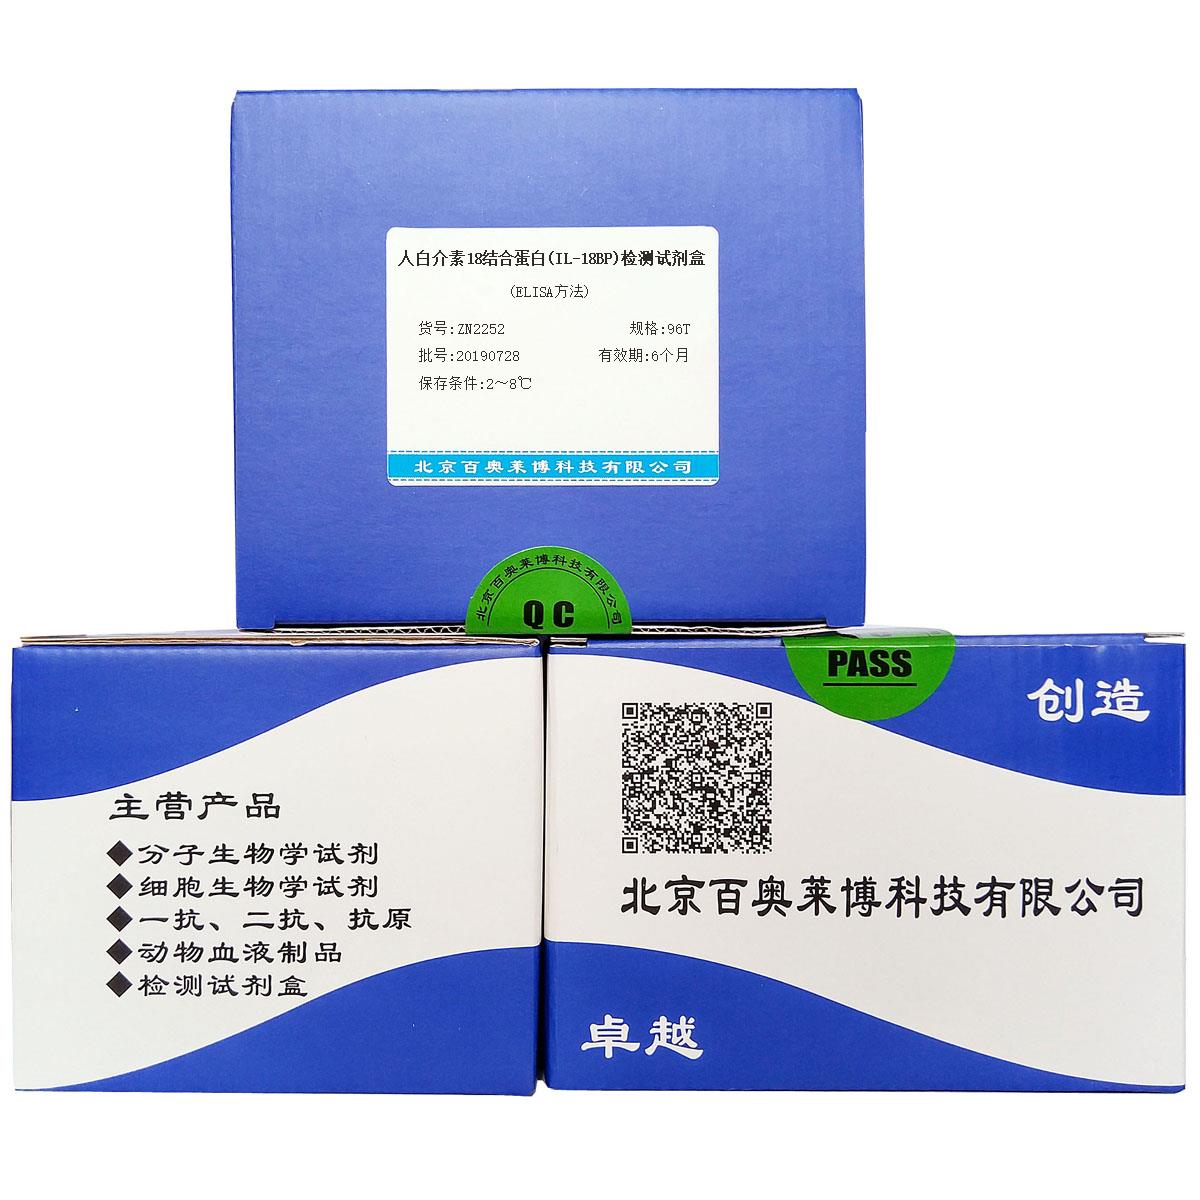 人白介素18结合蛋白(IL-18BP)检测试剂盒(ELISA方法)